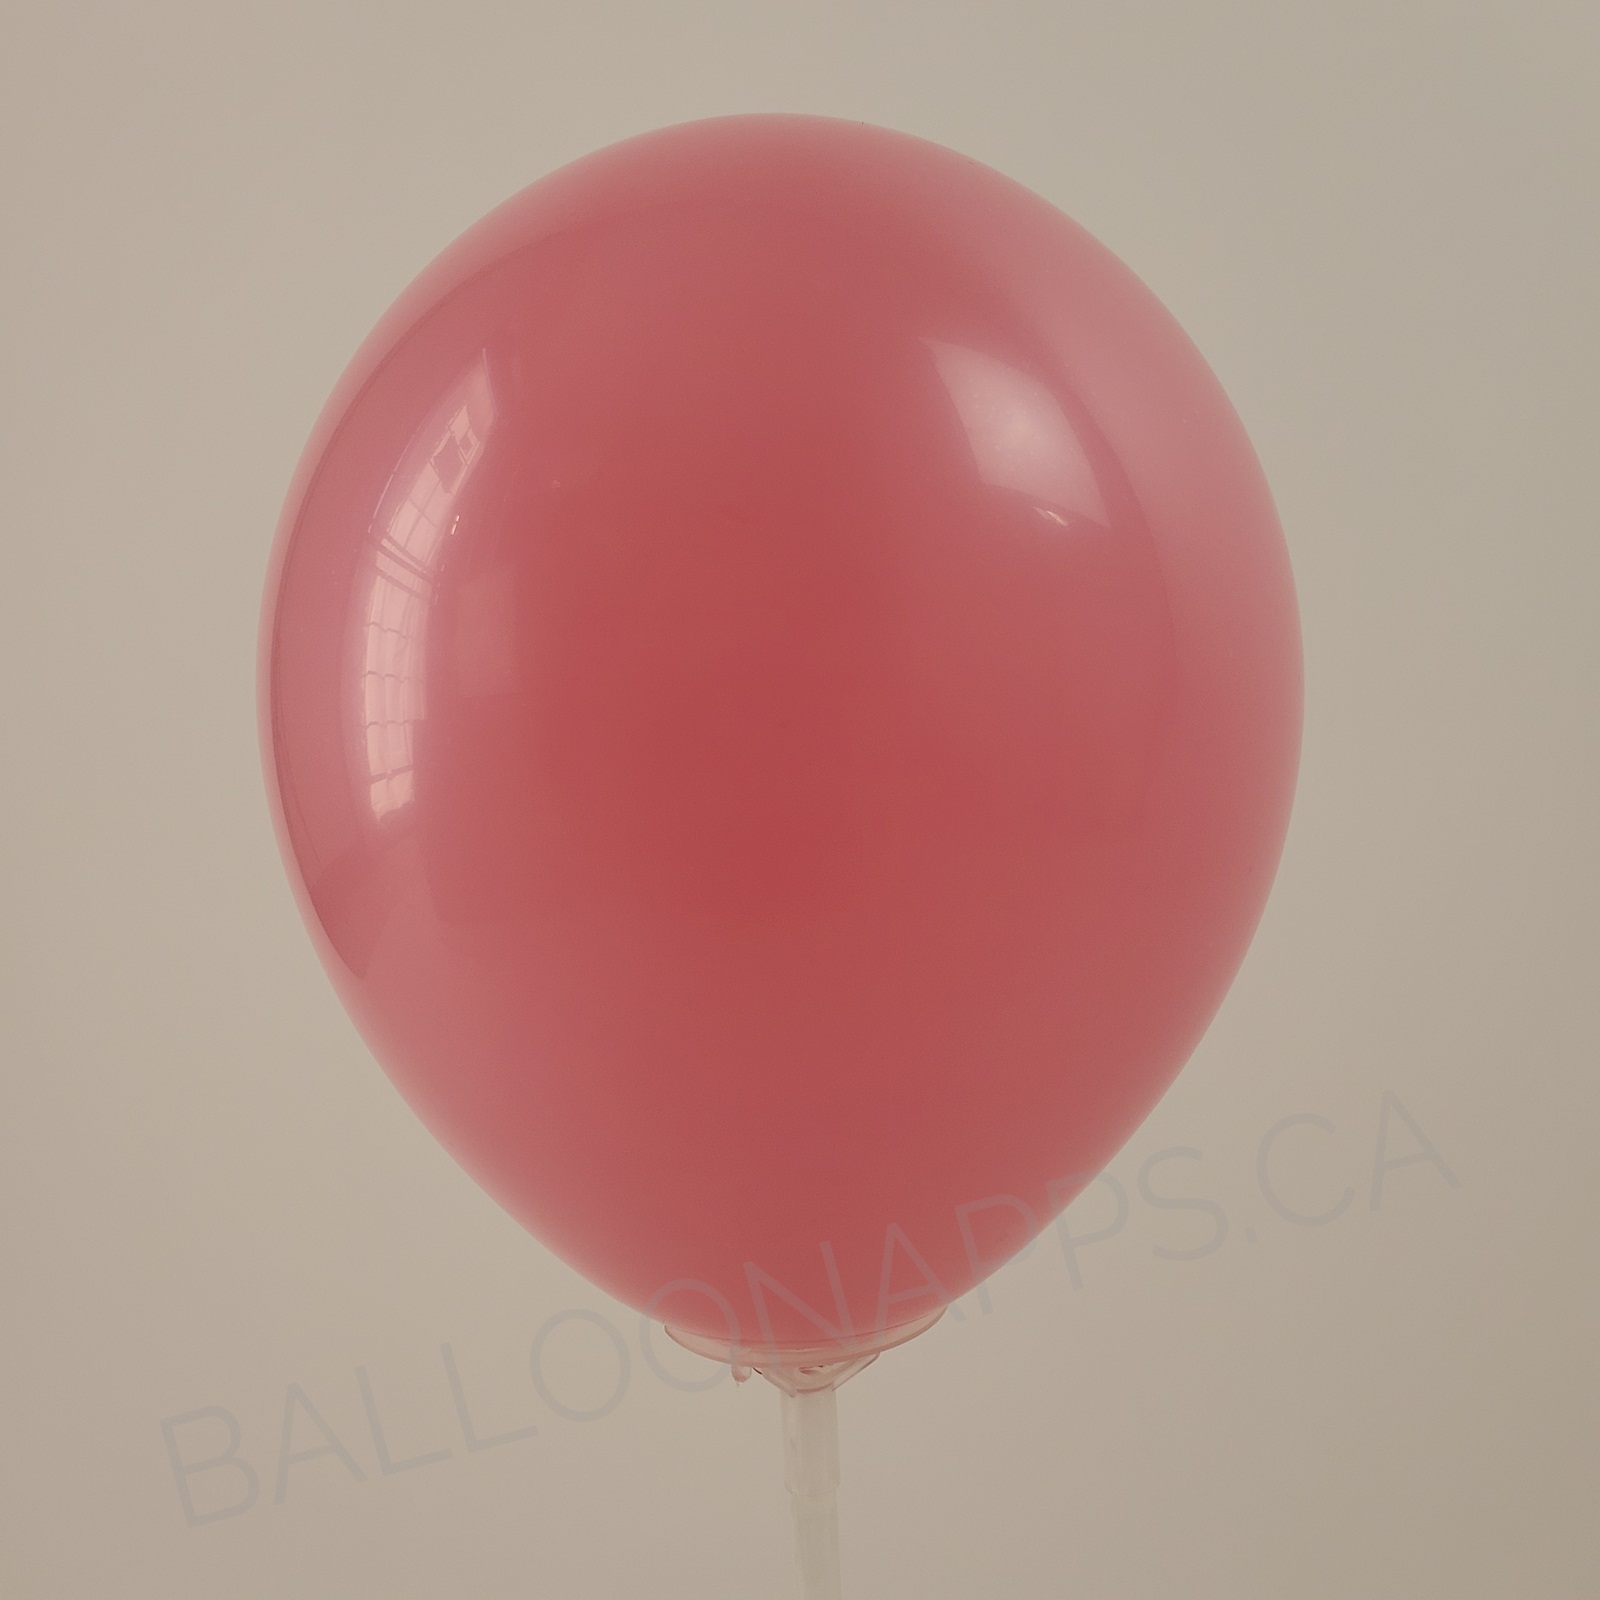 balloon texture Q (2) 36